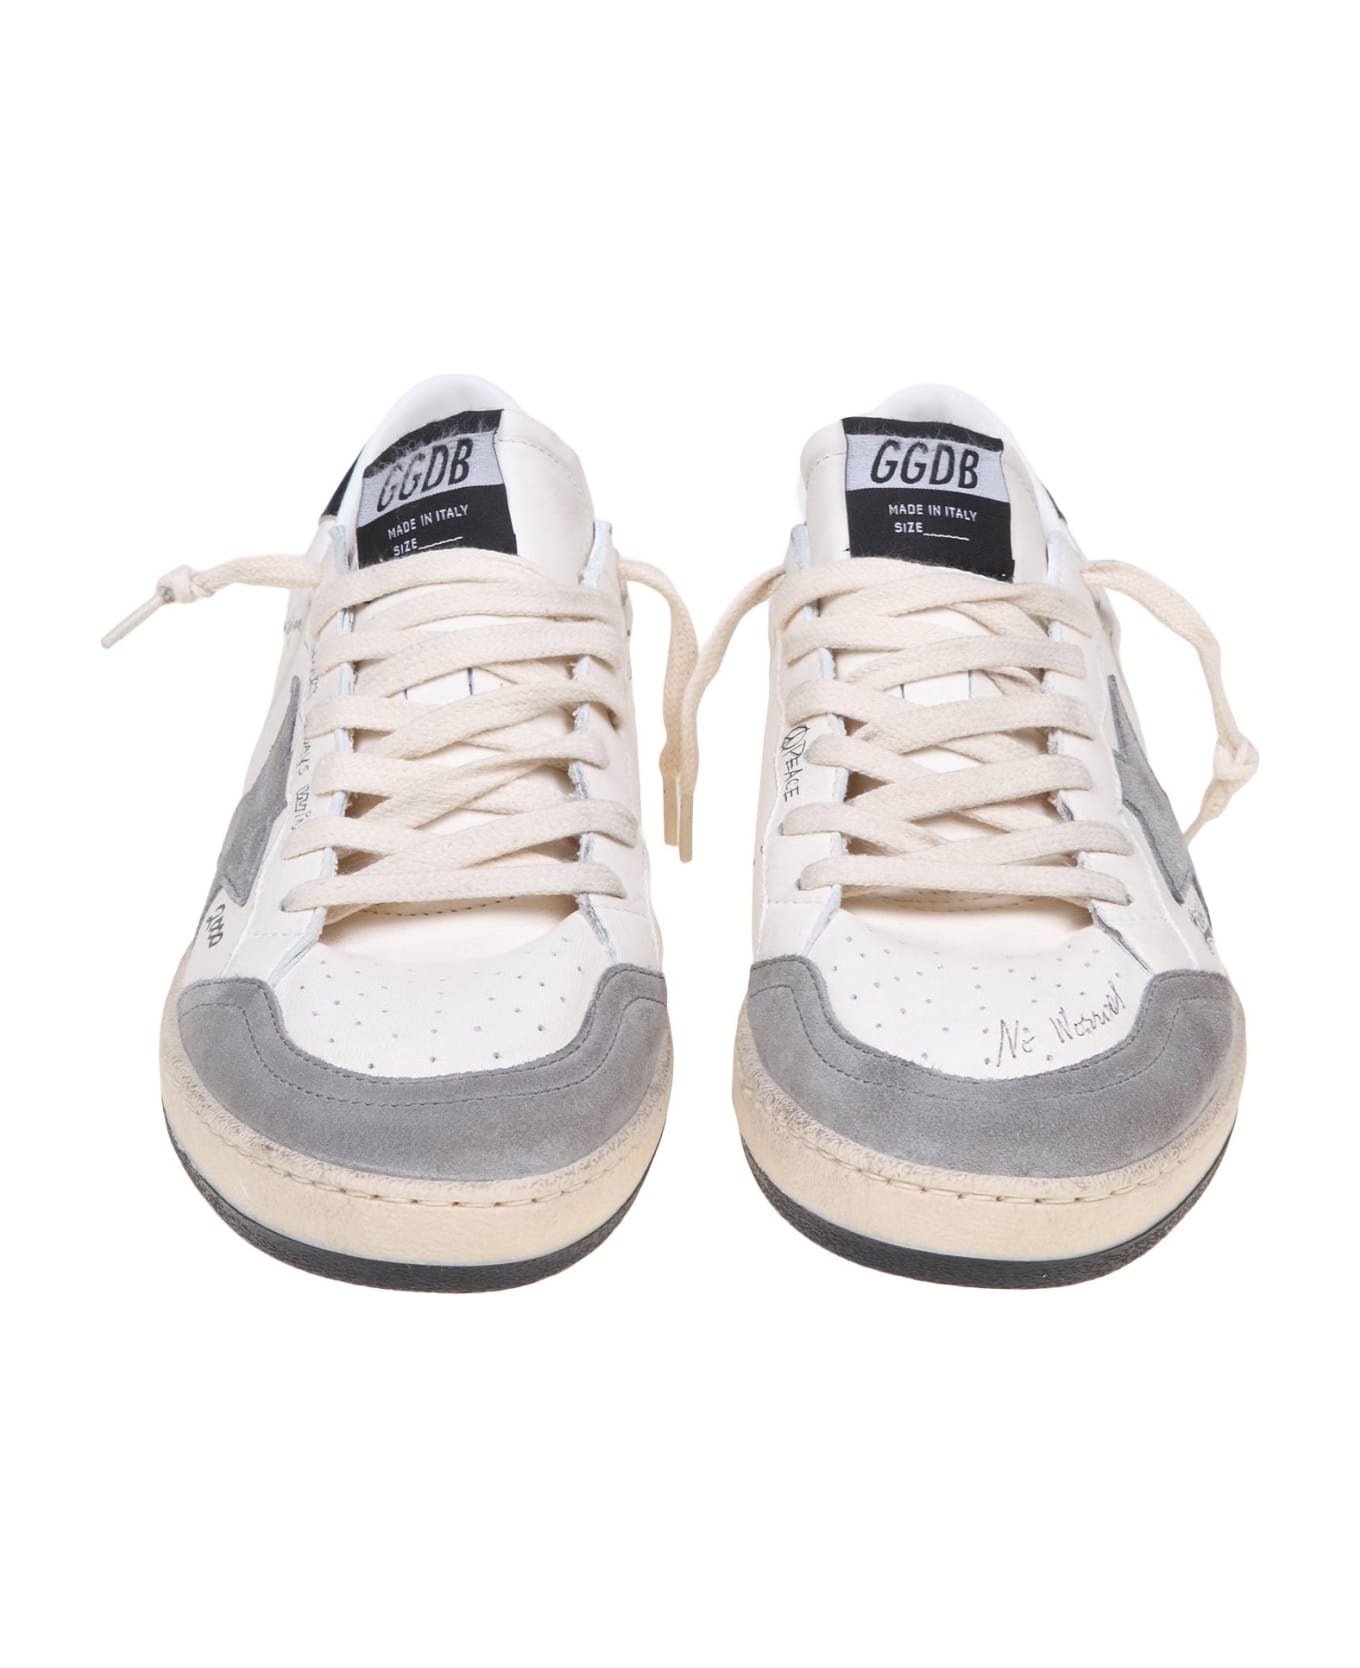 Golden Goose Ball Star Sneakers - White/Grey スニーカー